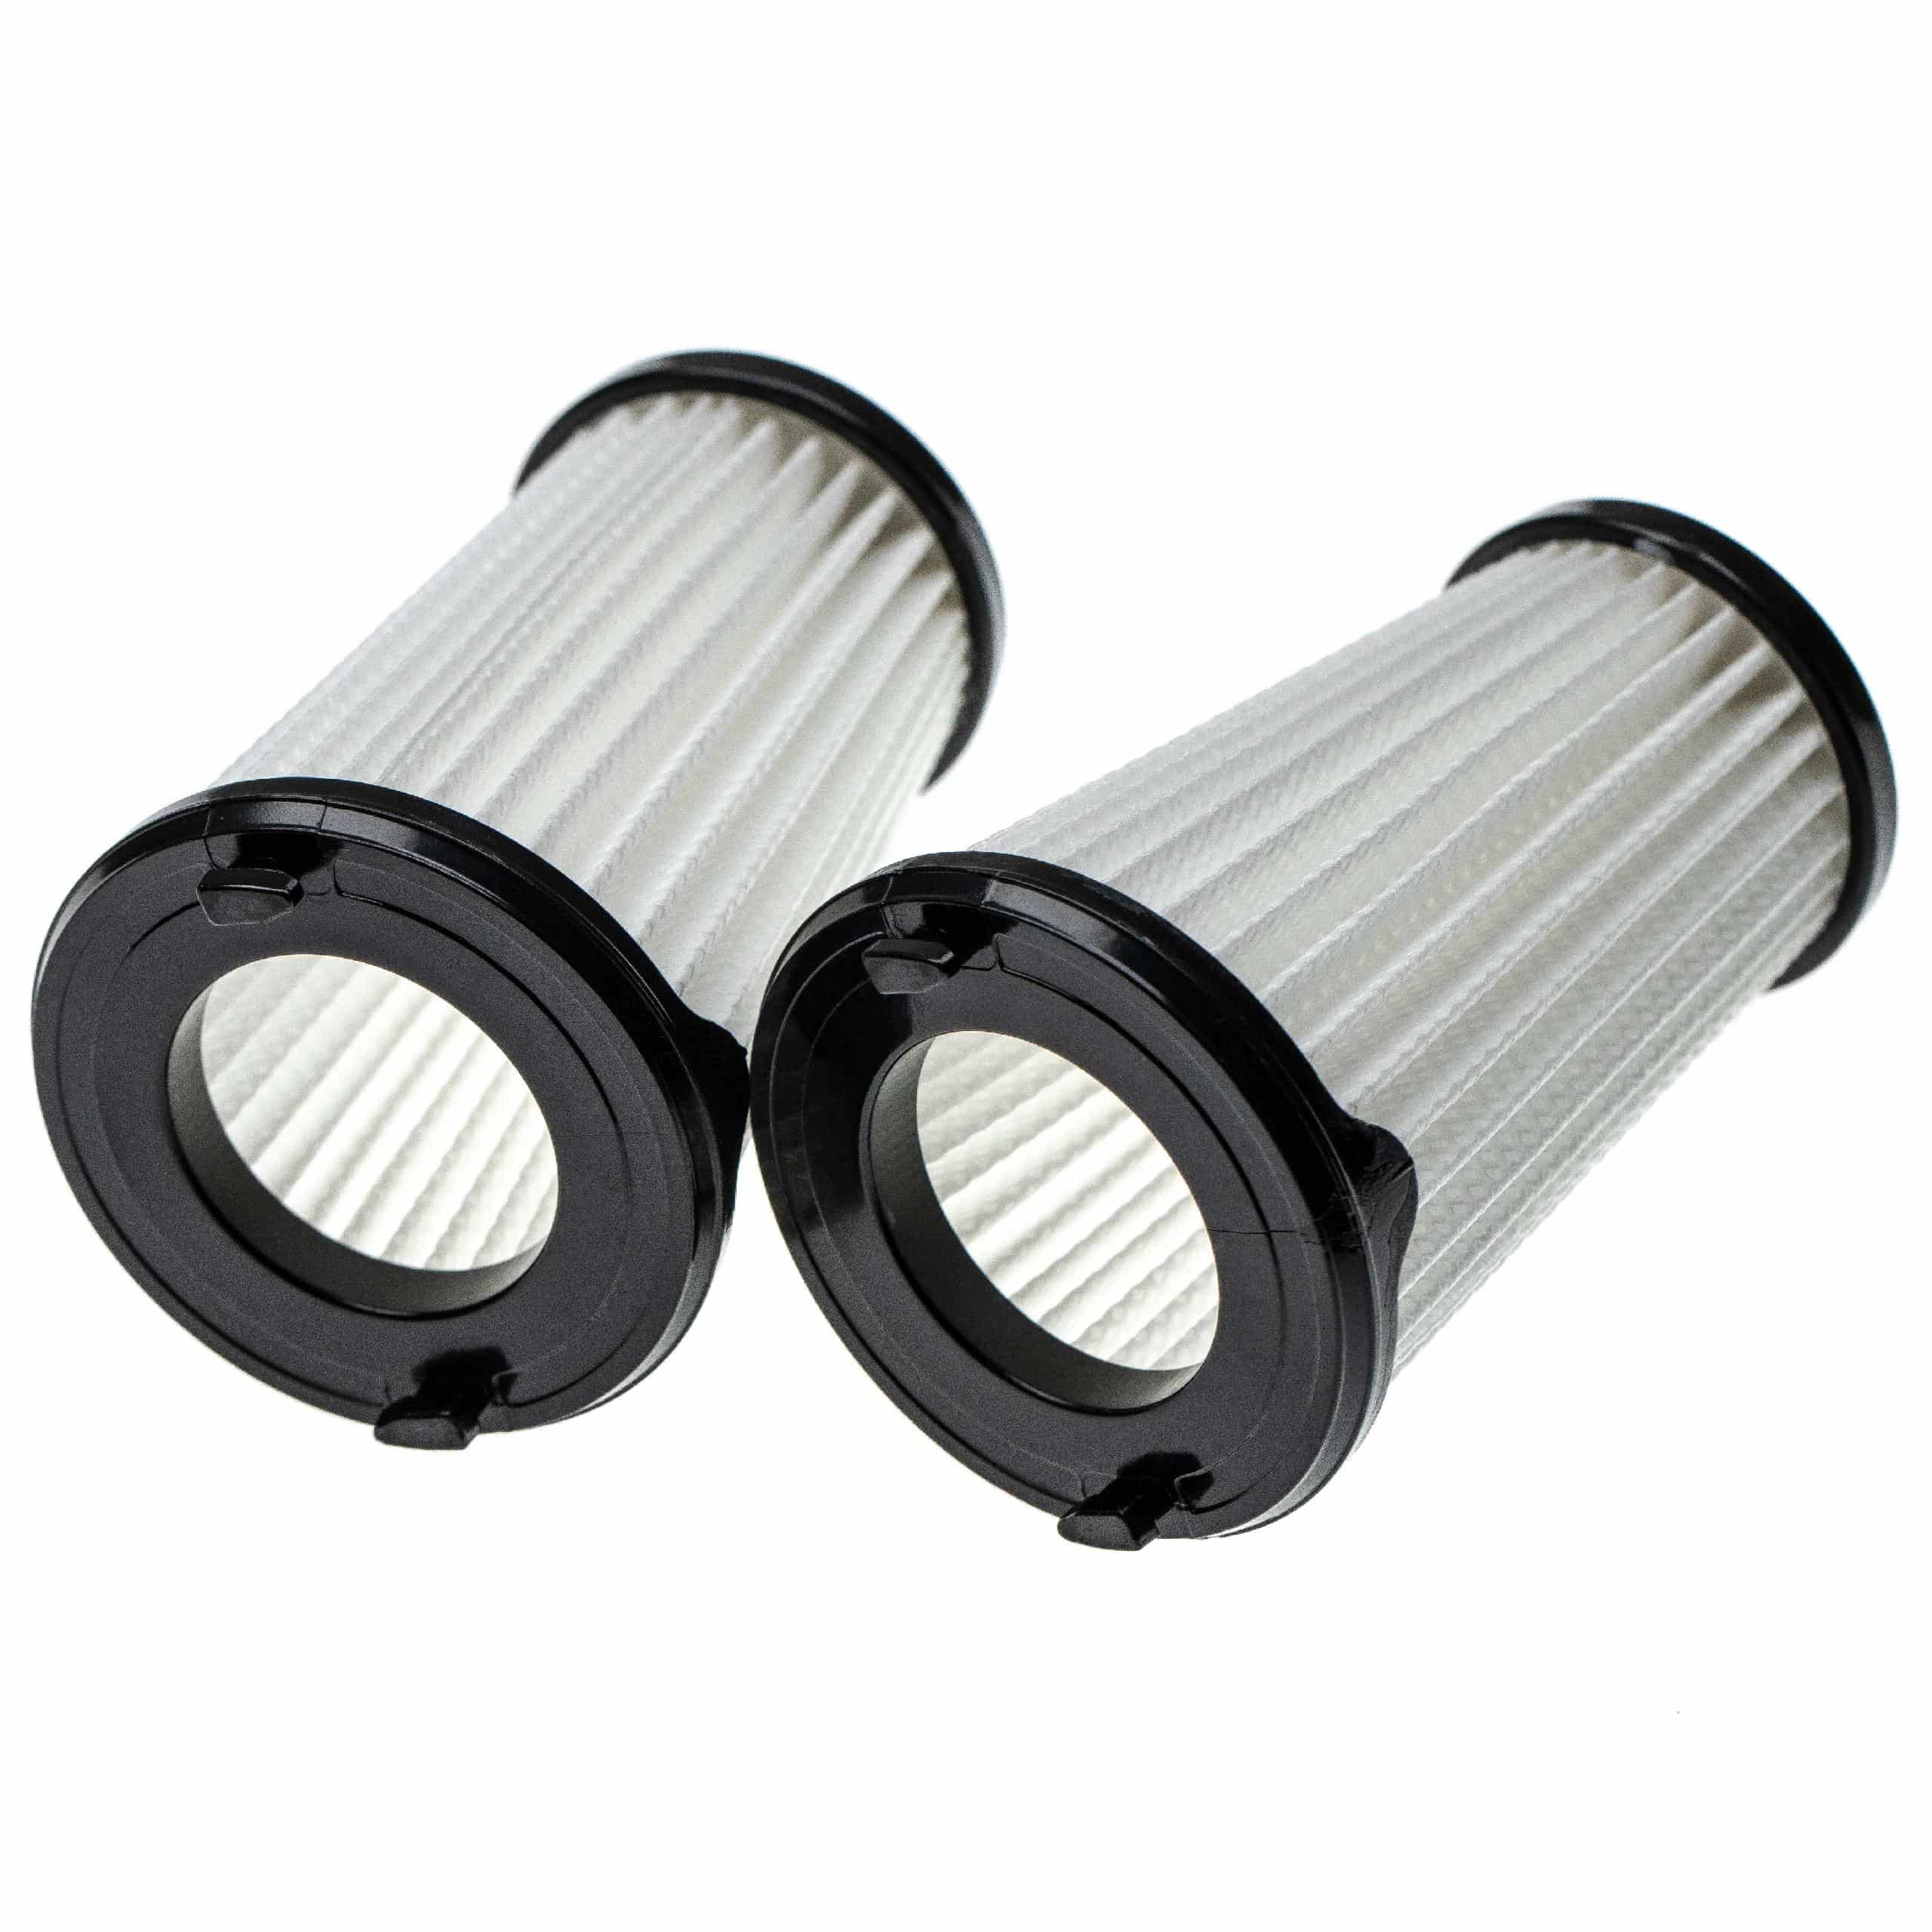 6x Filtro sostituisce AEG AEF150, 9001683755, 90094073100 per aspirapolvere - filtro a lamelle, nero / bianco